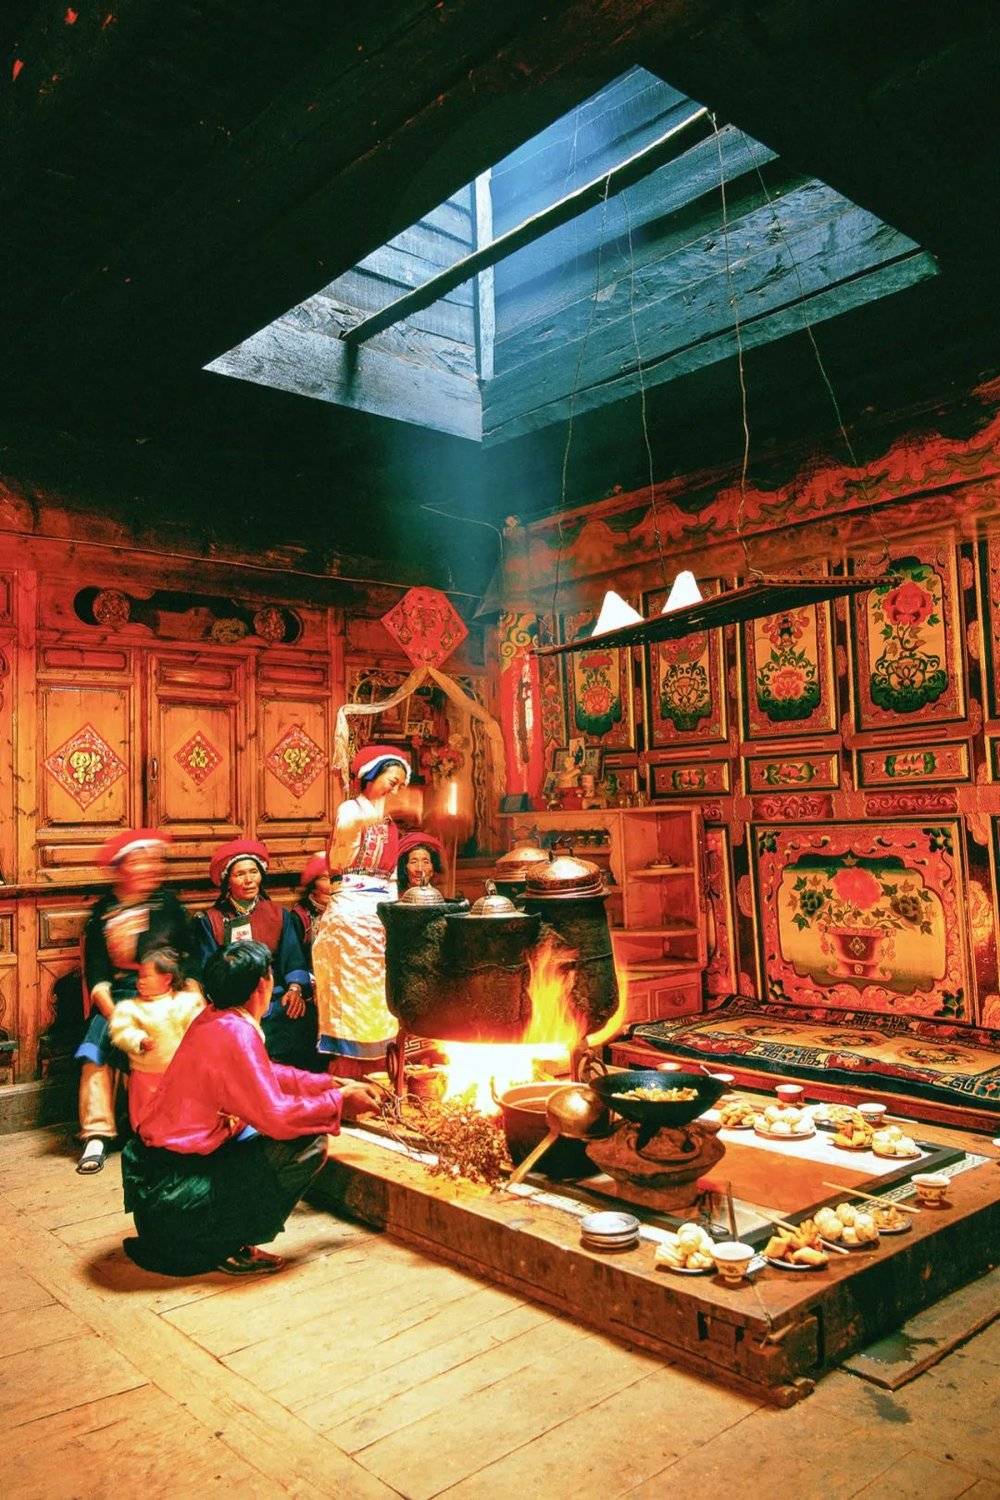 唯一不变的是各民族对生活的热爱。图为一家藏民正在做饭。摄影/李东红